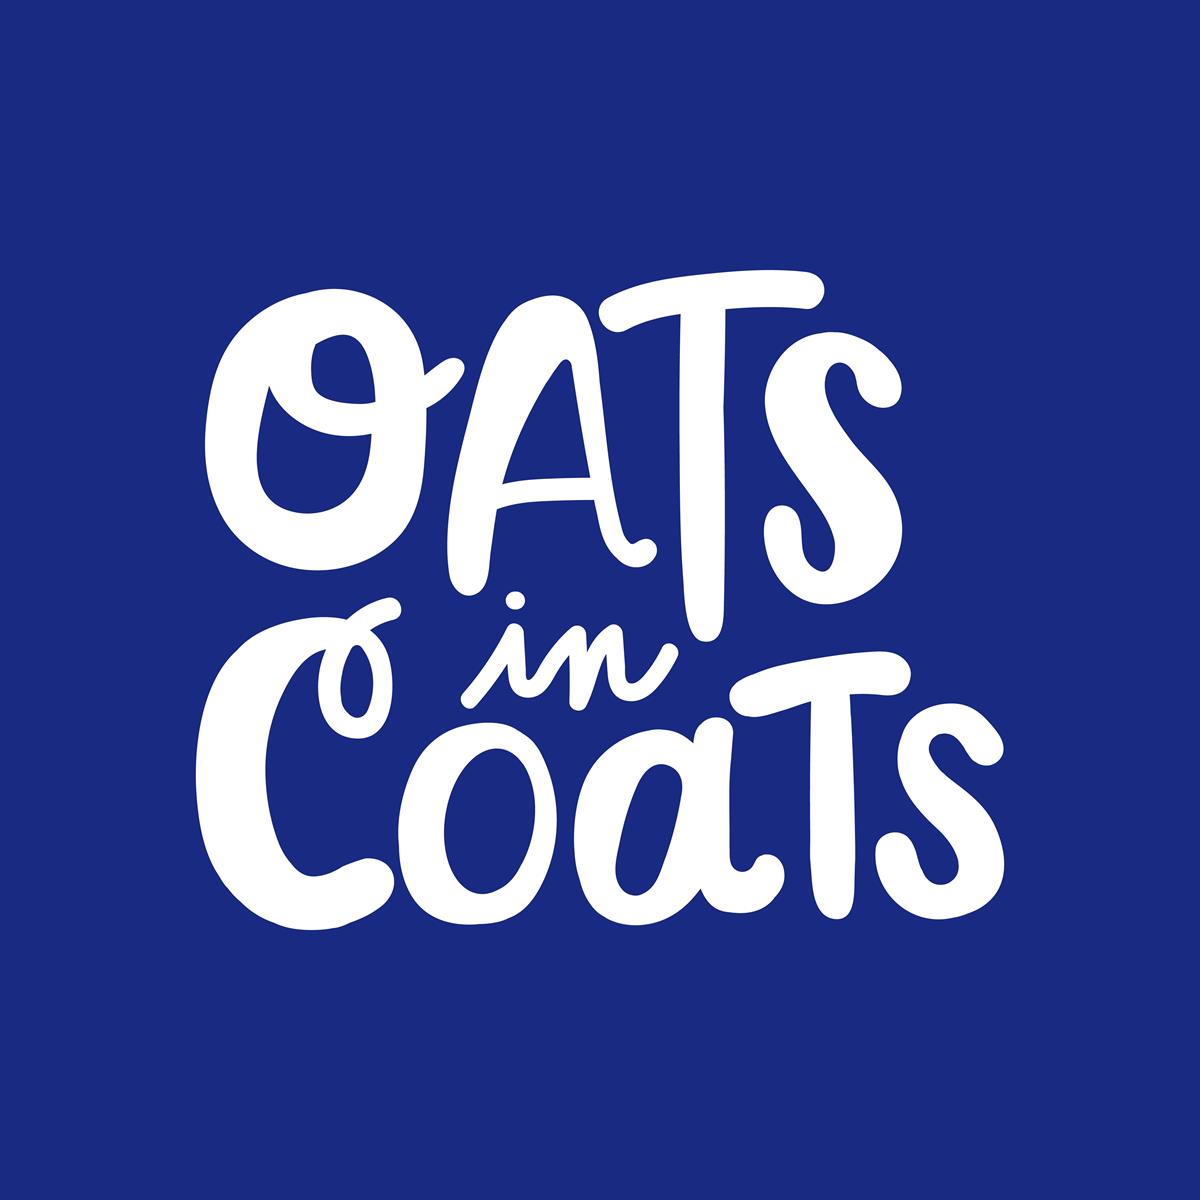 Oats in Coats